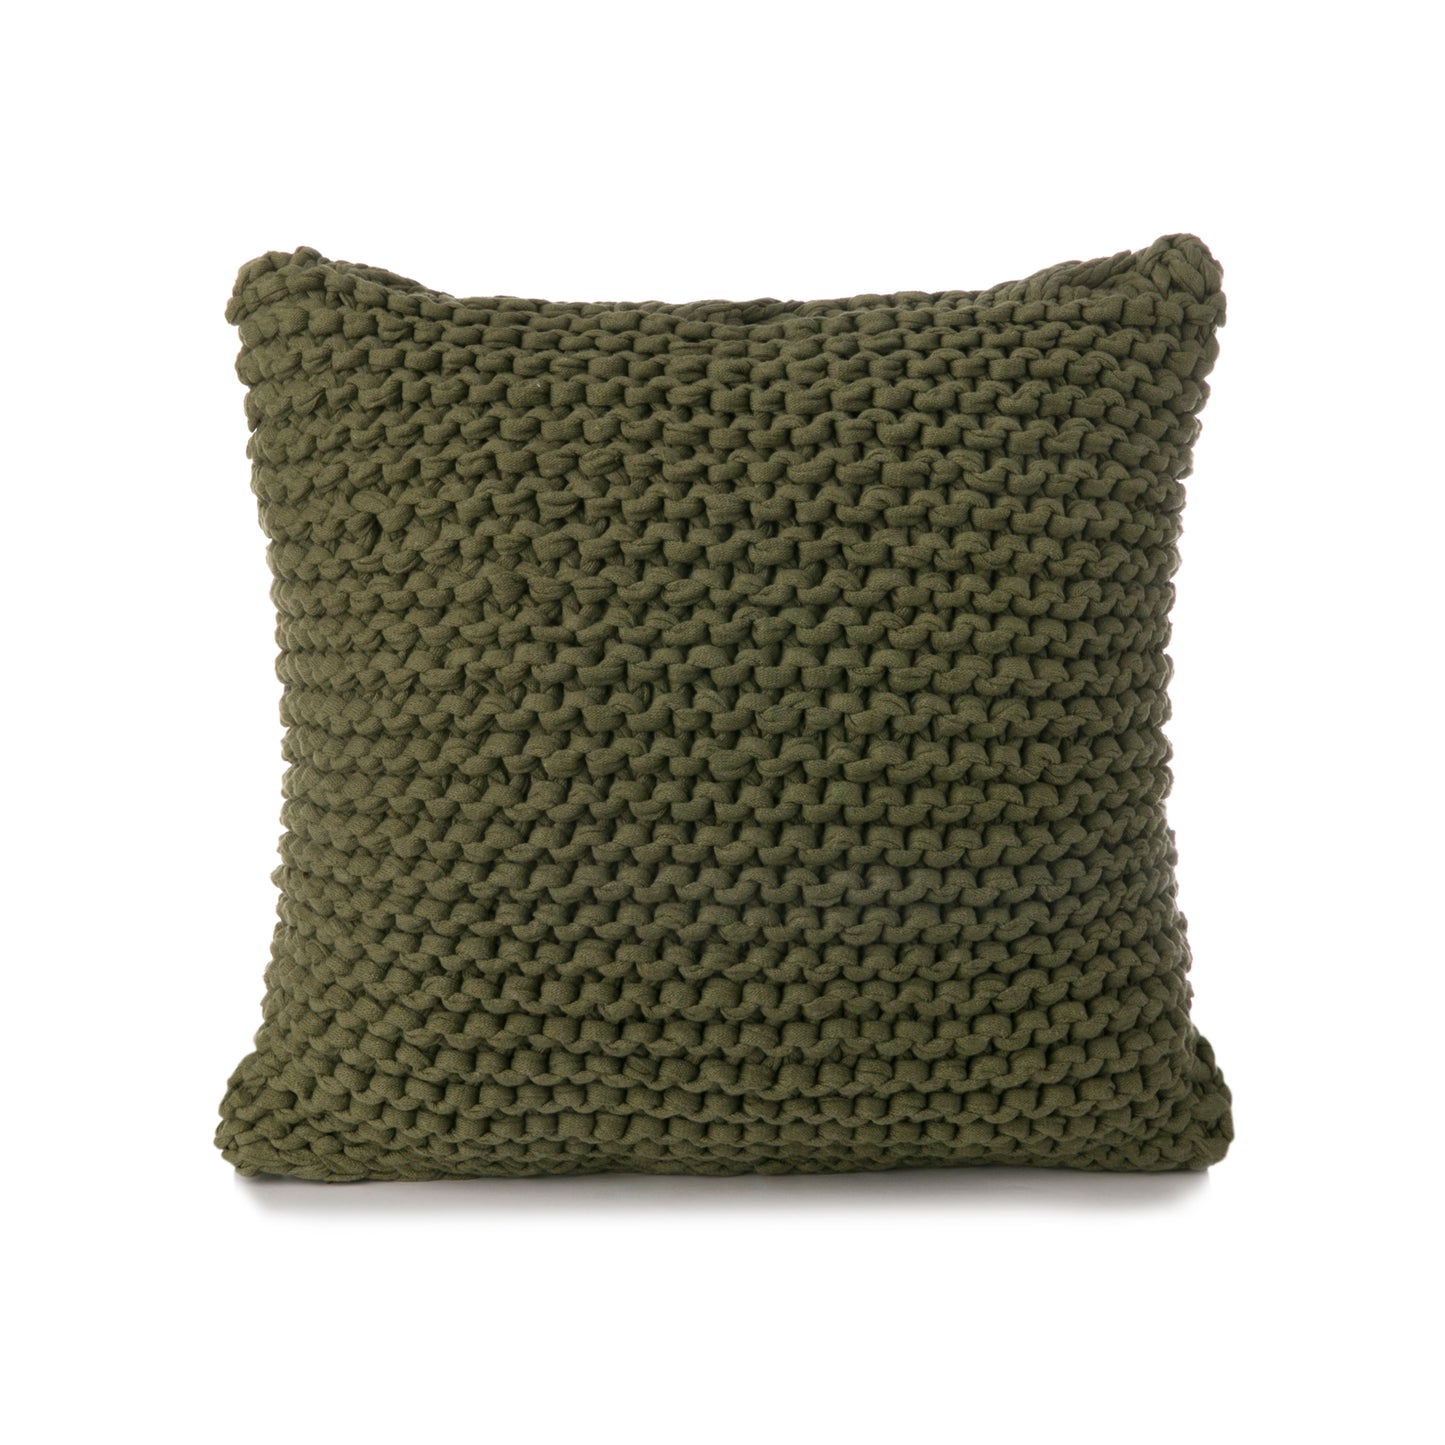 Almofada em tricô artesanal Verde, frente e verso, com fio 100% algodão. Fechamento com zíper, possibilitando a remoção da capa para lavagem. Dimensões: Altura - 50cm; Largura - 50cm. 